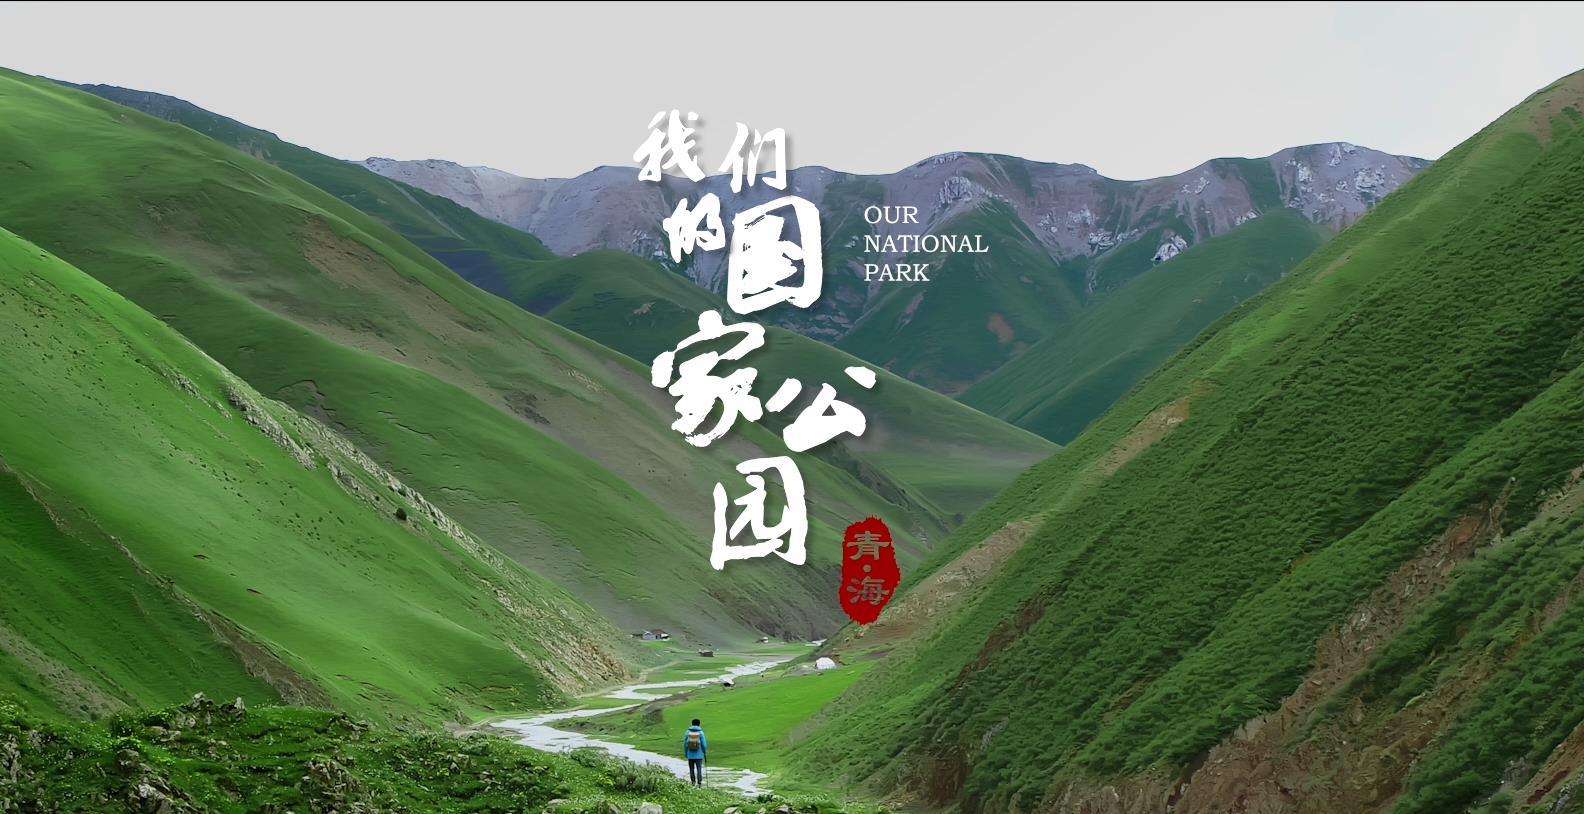  《青海·我们的国家公园》第三集  峡谷 宣传片